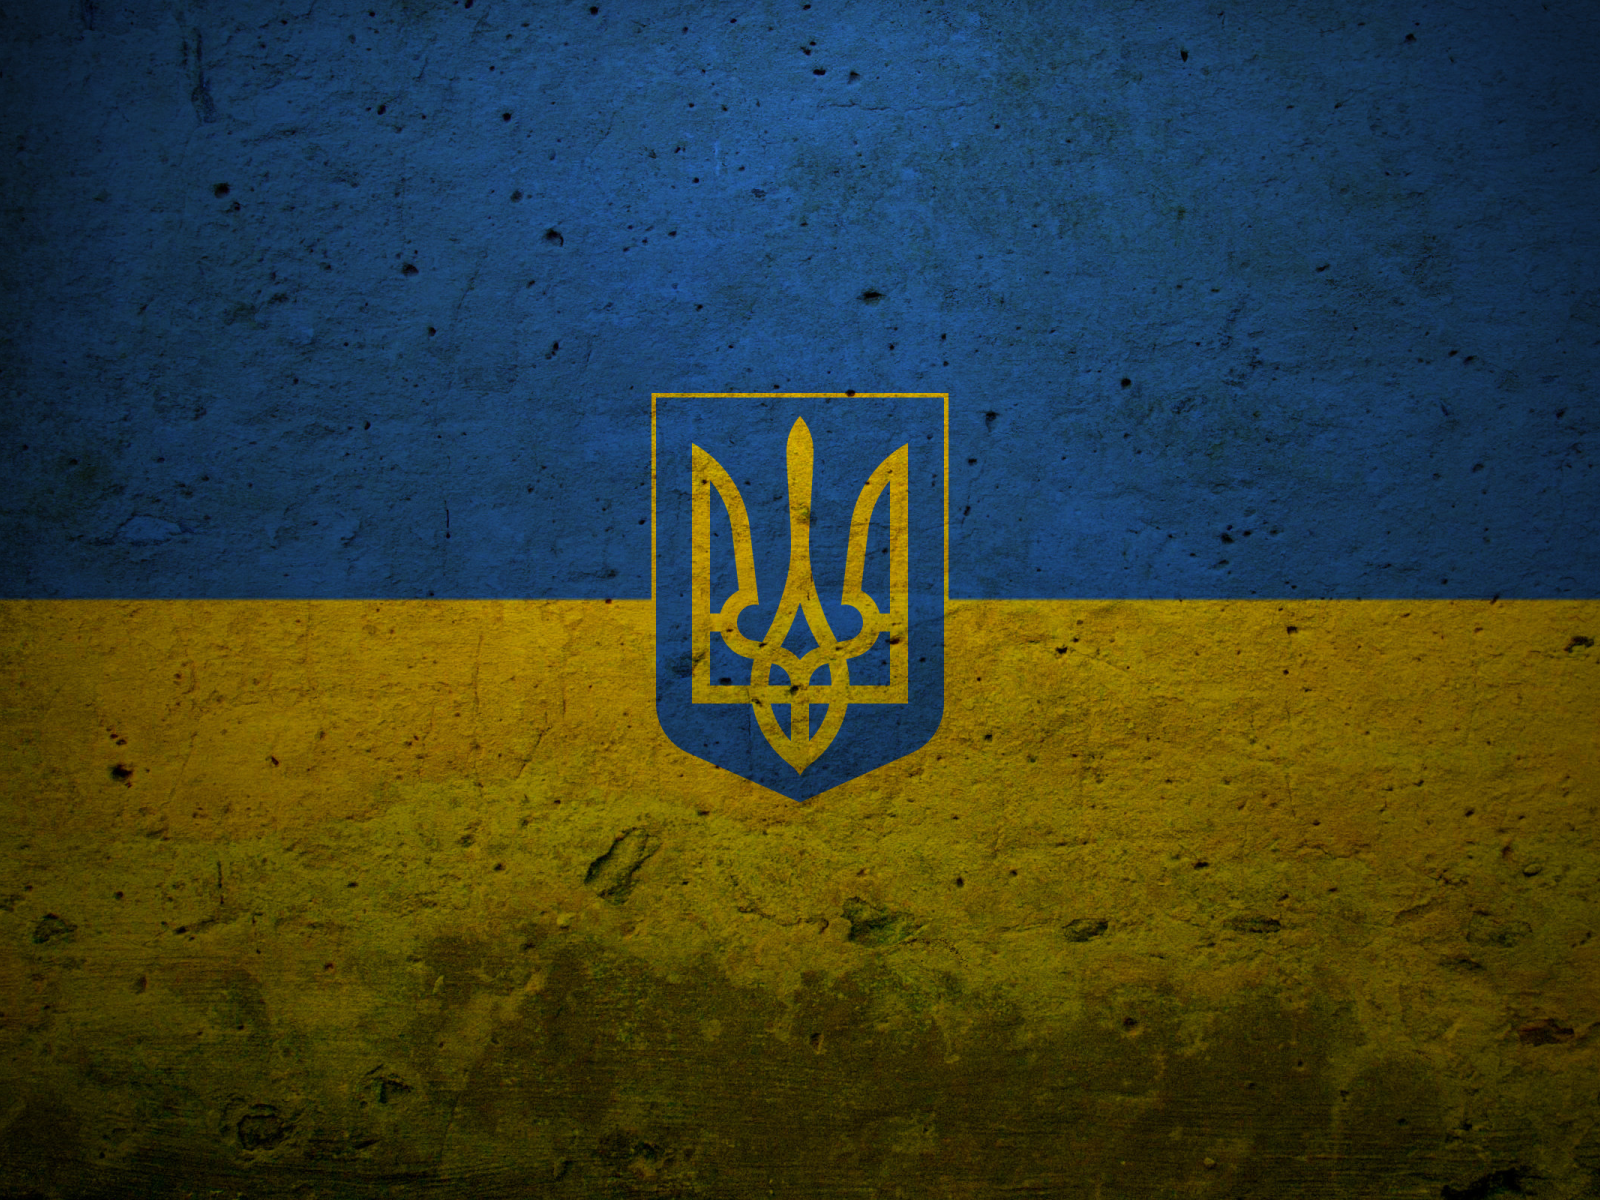 синий, символ, страна, украина, знак, символика, страны, жёлтый, герб, флаг, голубой